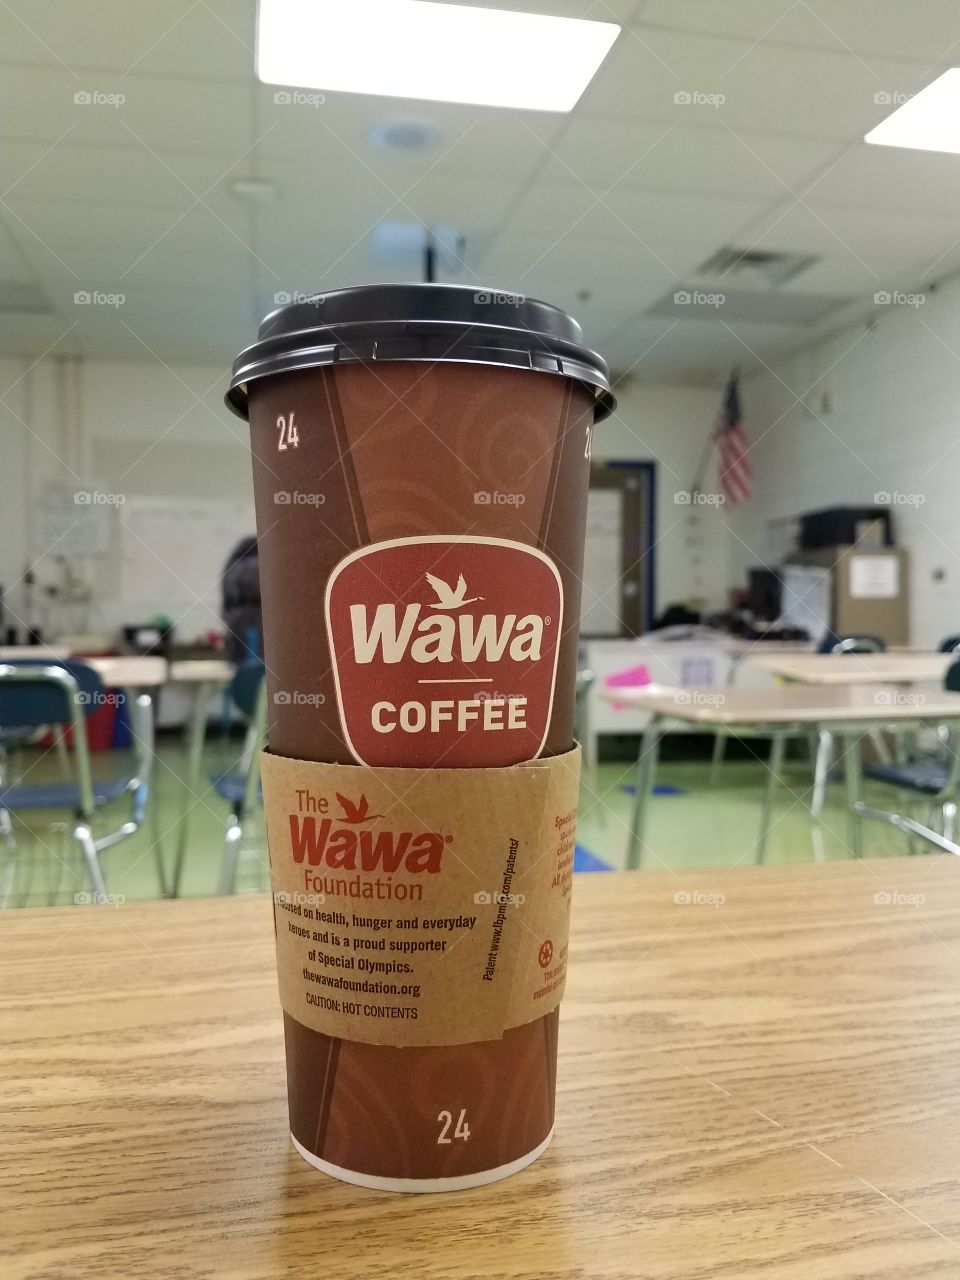 Wawa Coffee in the morning